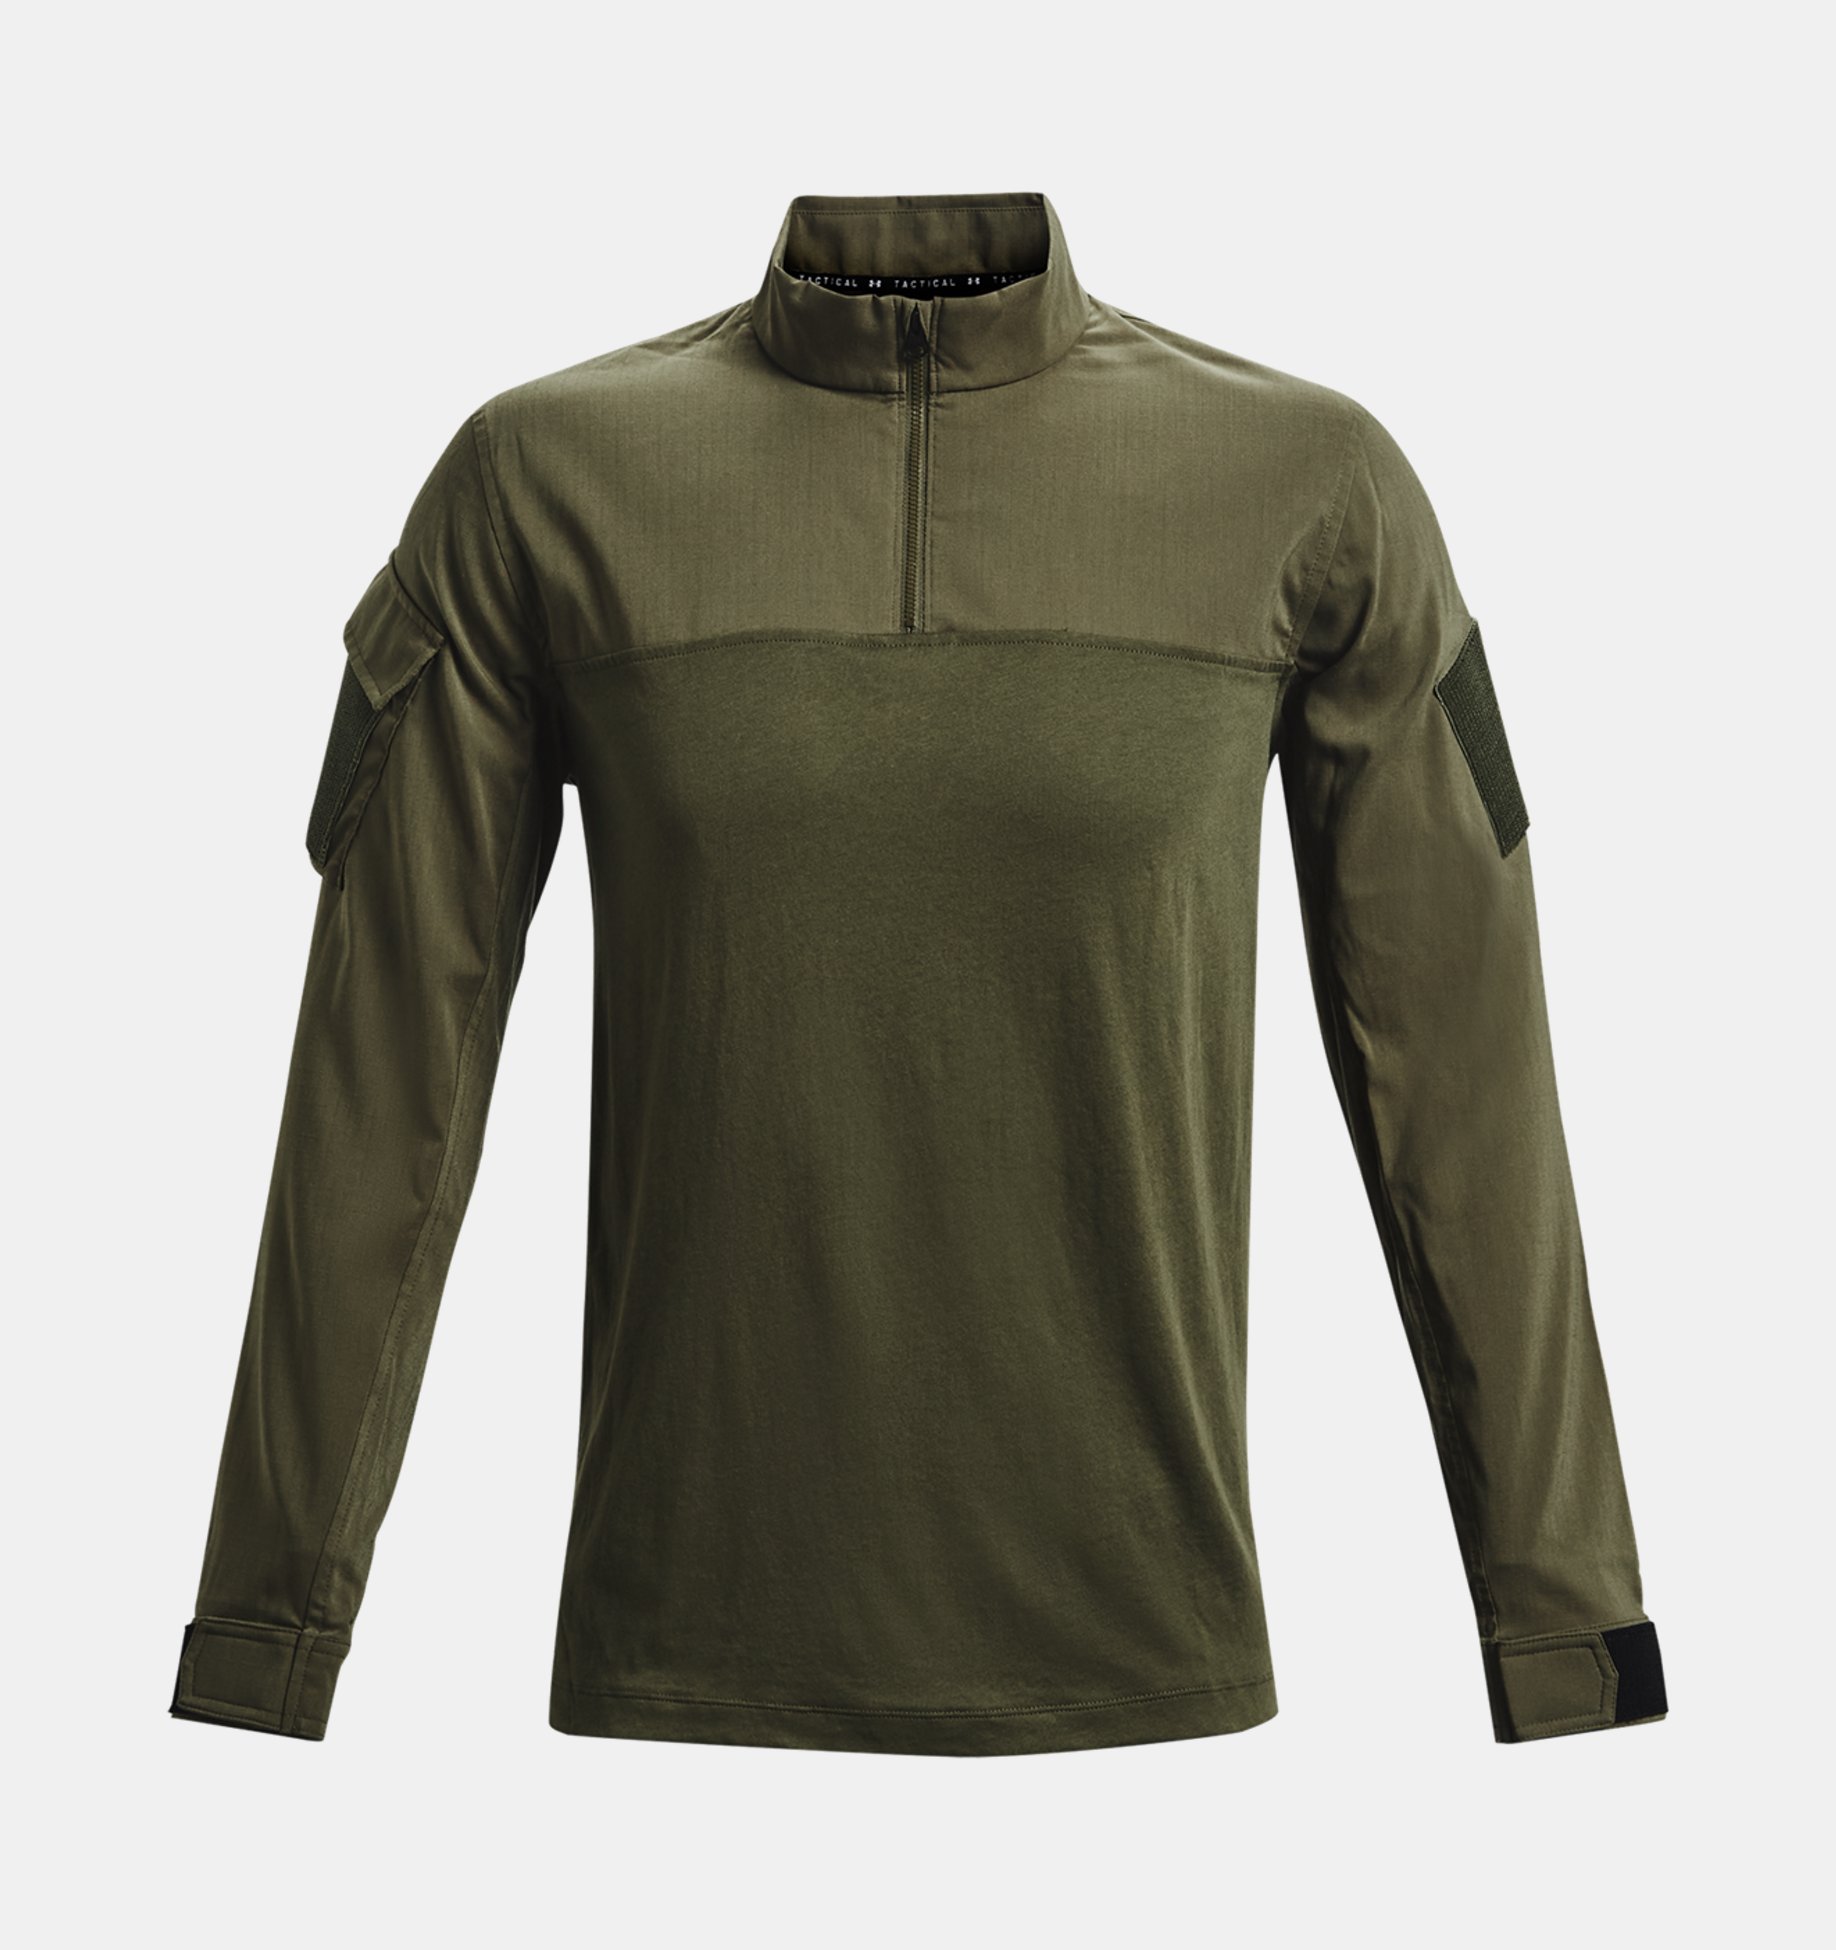 Under Armour TAC Combat Shirt 2.0  Tactical Langarm Shirt Army 1279639 